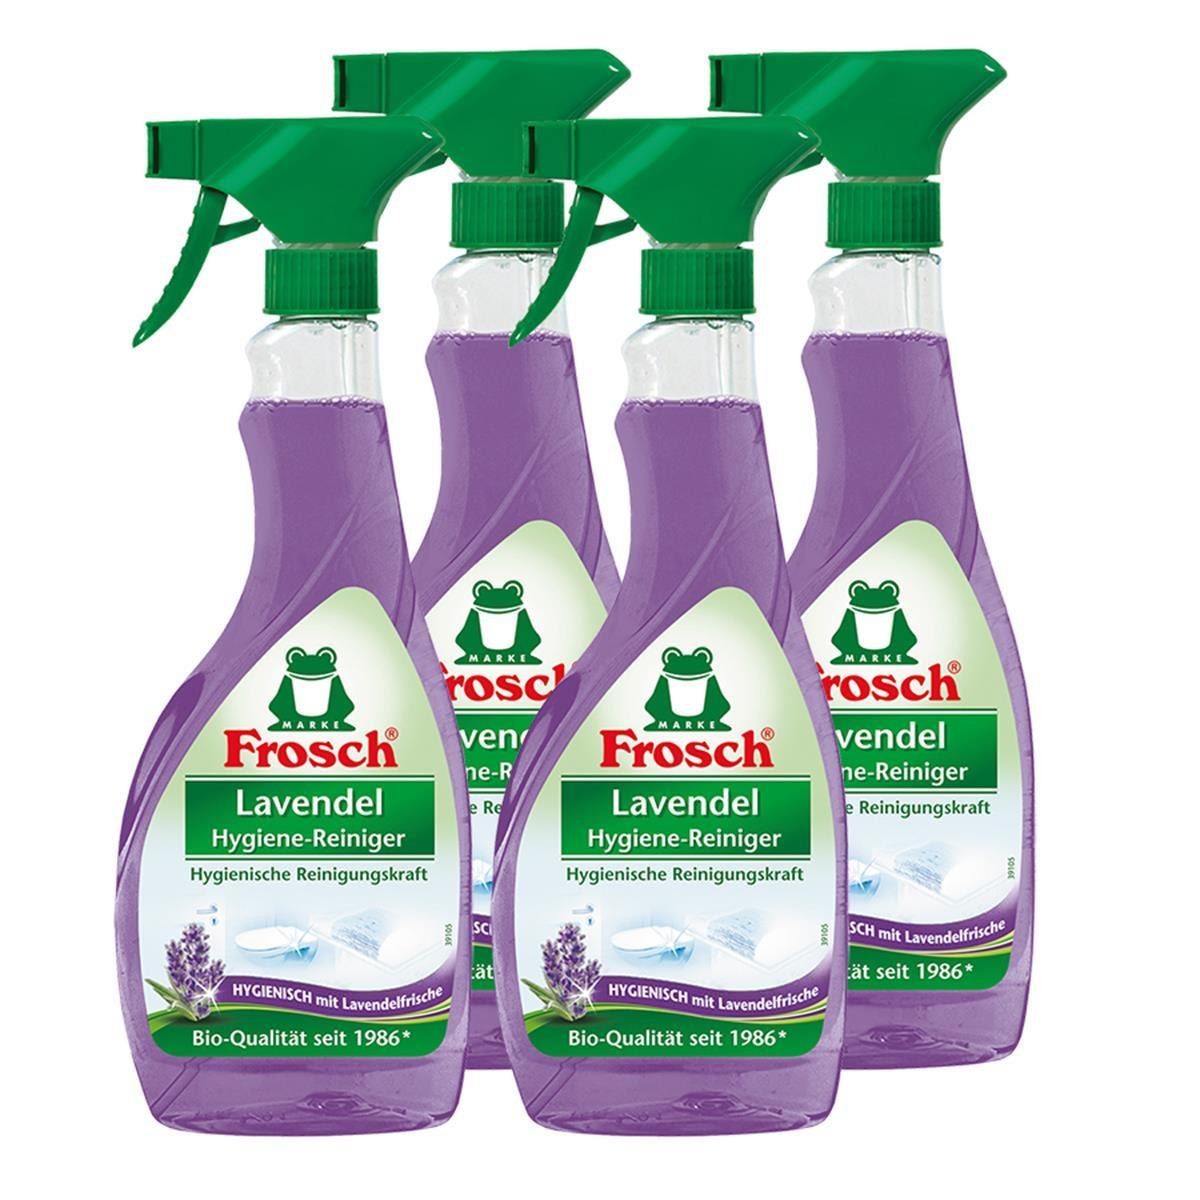 FROSCH Lavendel Spezialwaschmittel 4x ml Hygiene-Reiniger Sprühflasche 500 Frosch